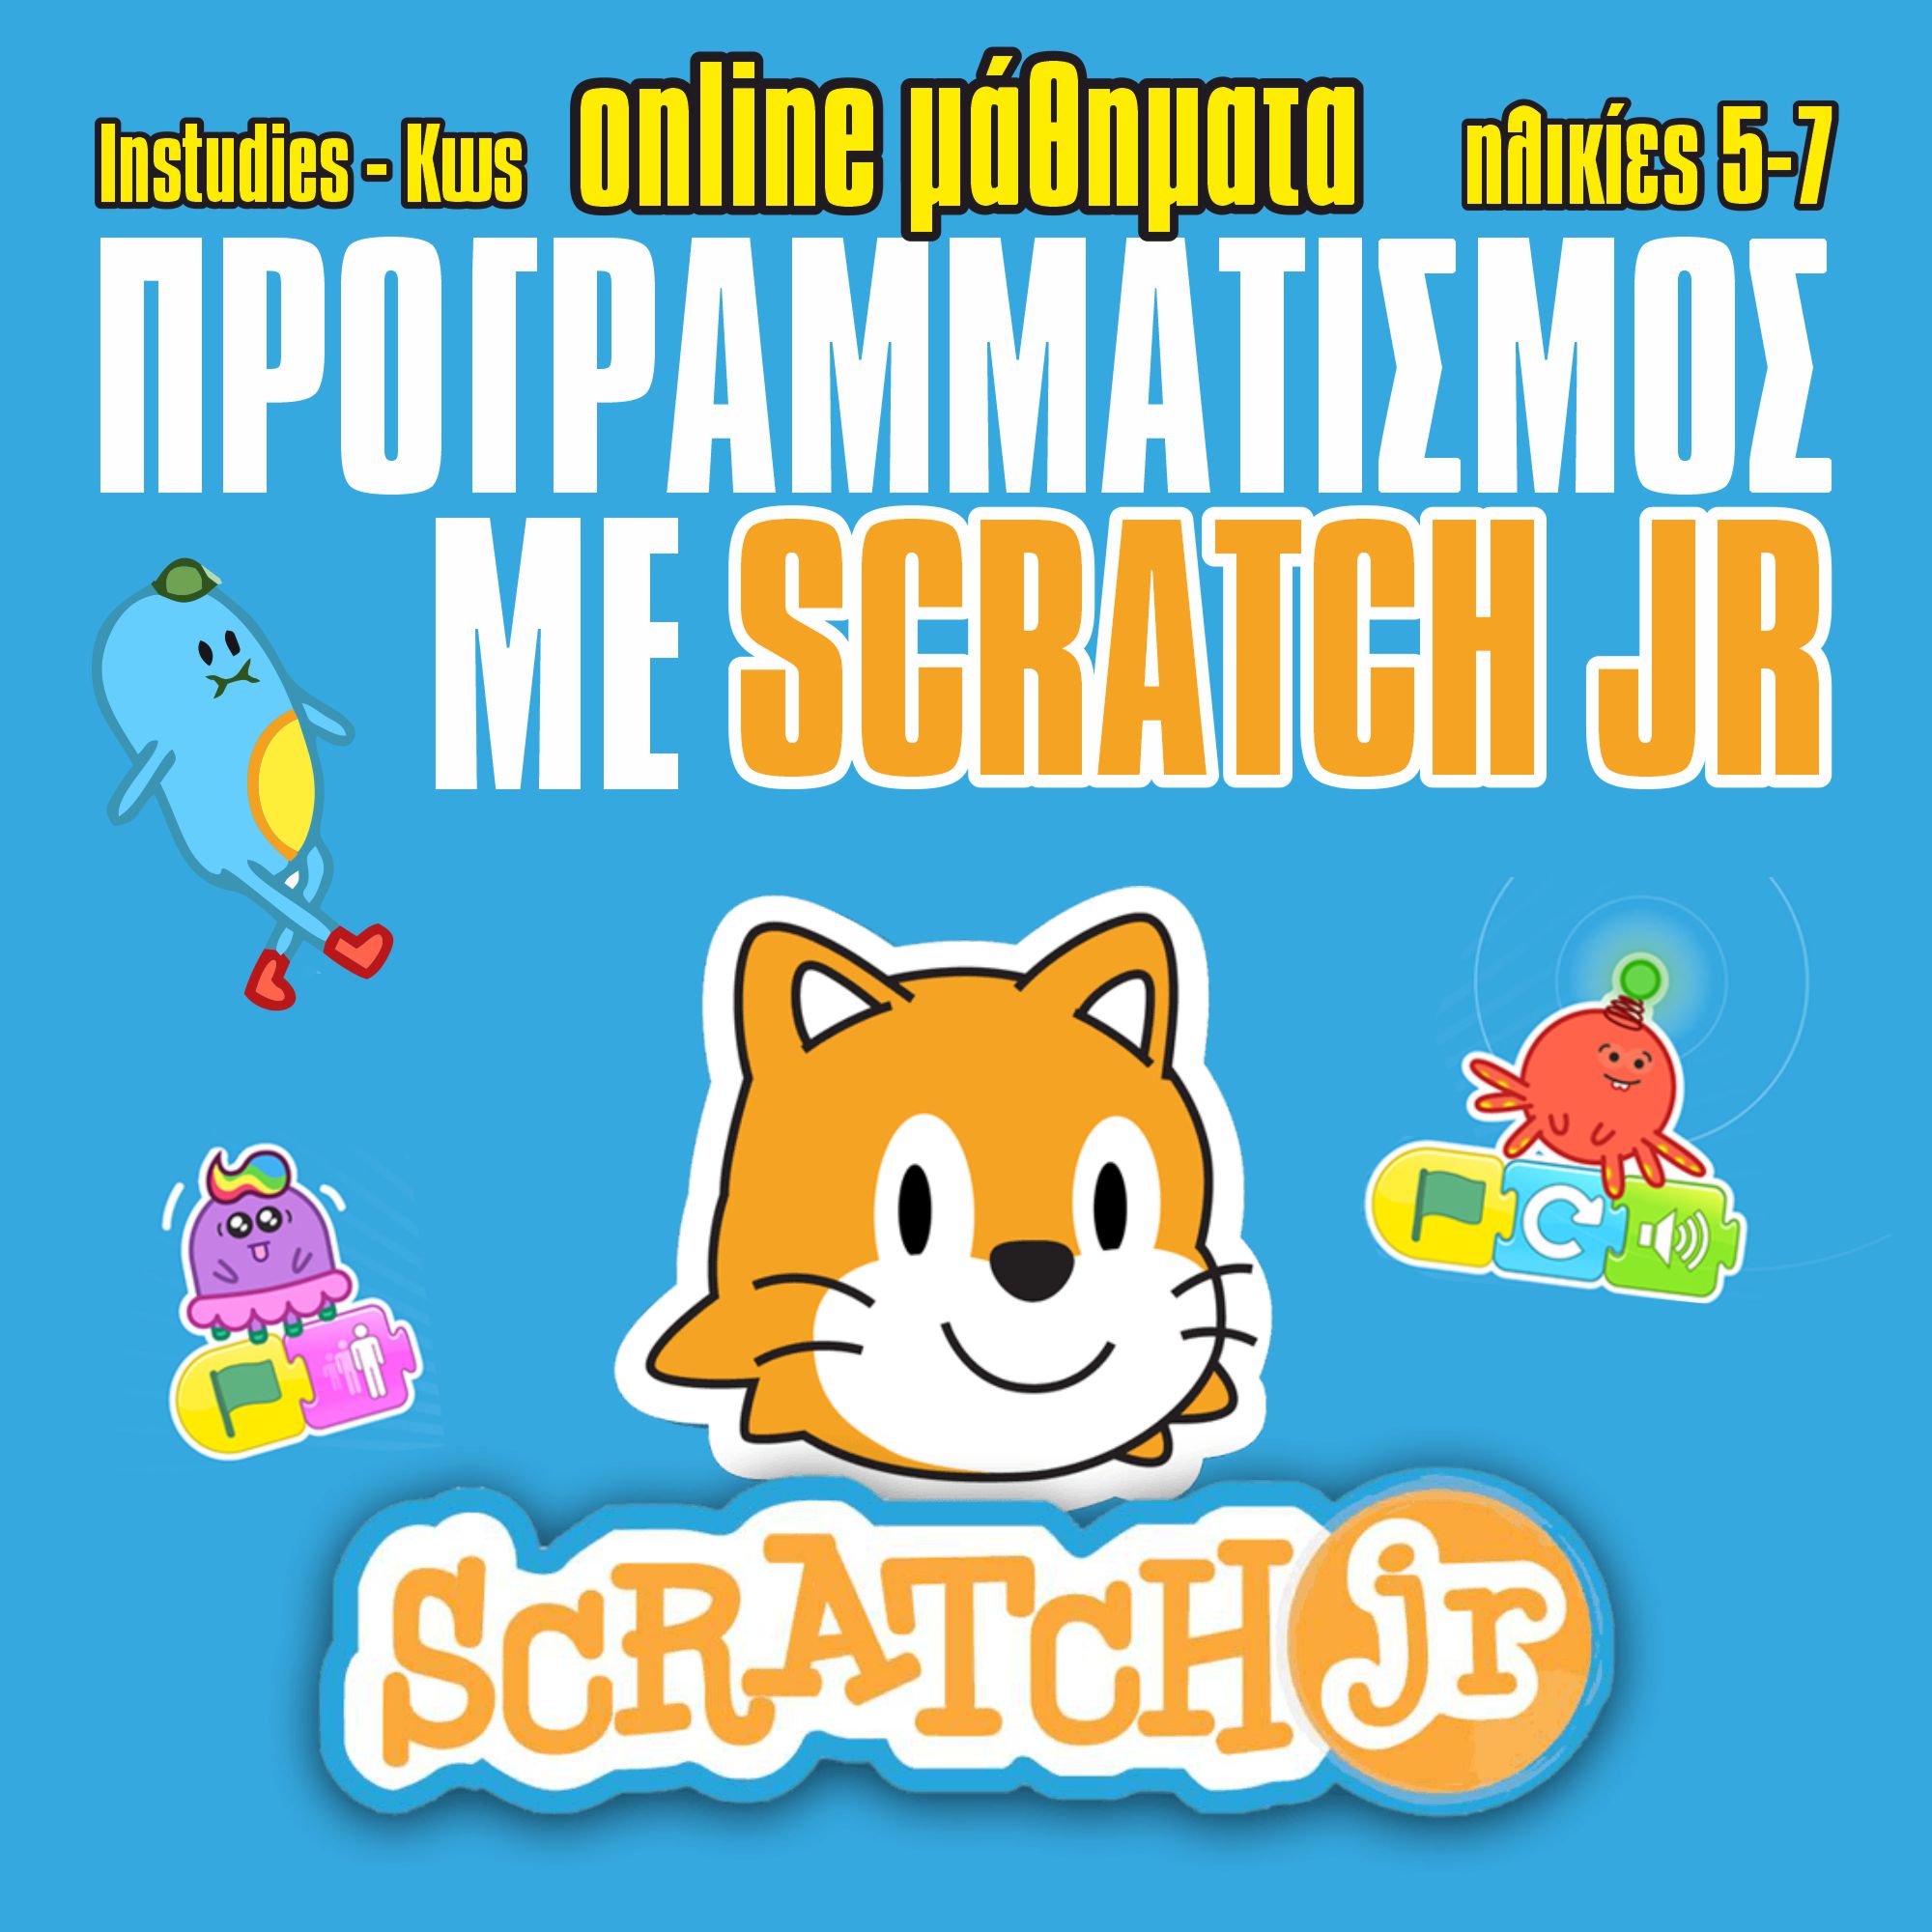 Προγραμματισμός με Scratch jr